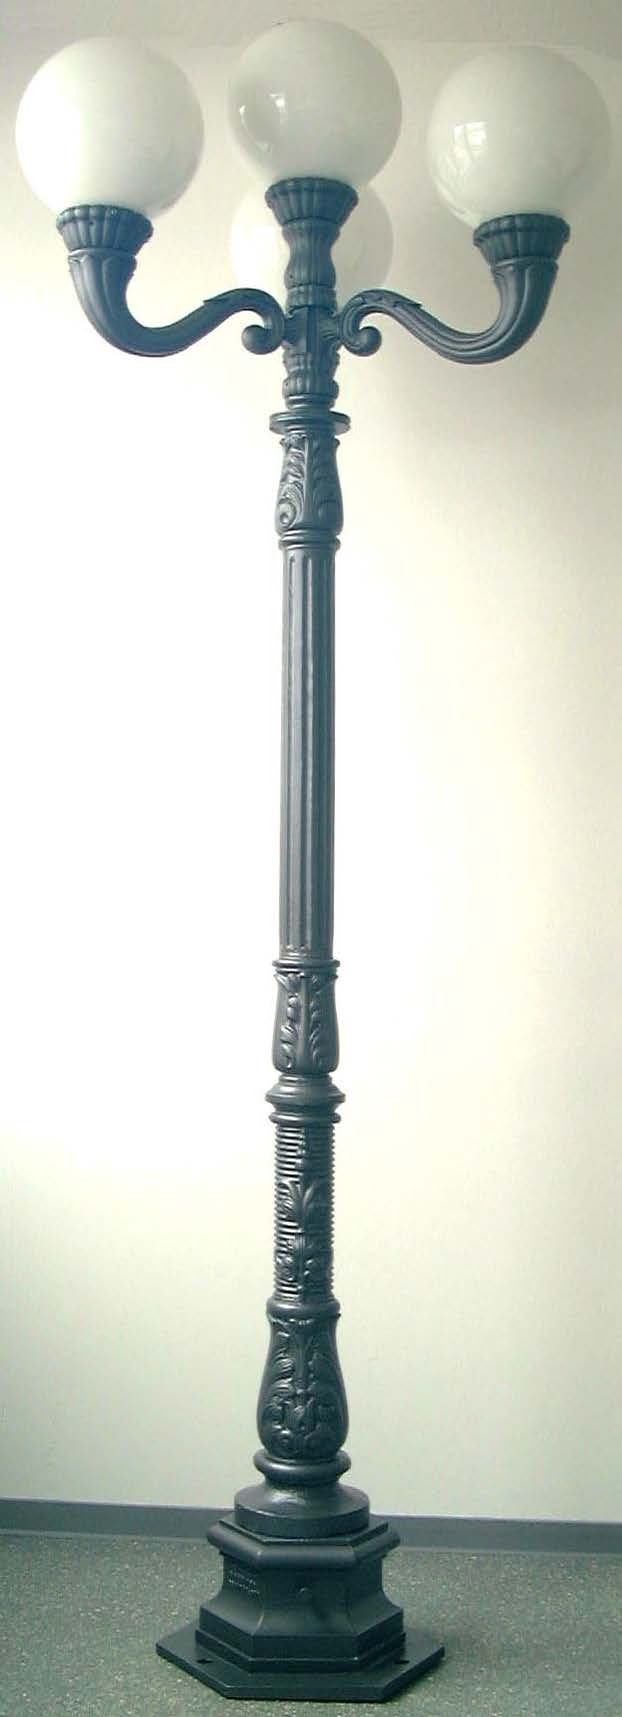 Lampa z kulą nr 1740-3